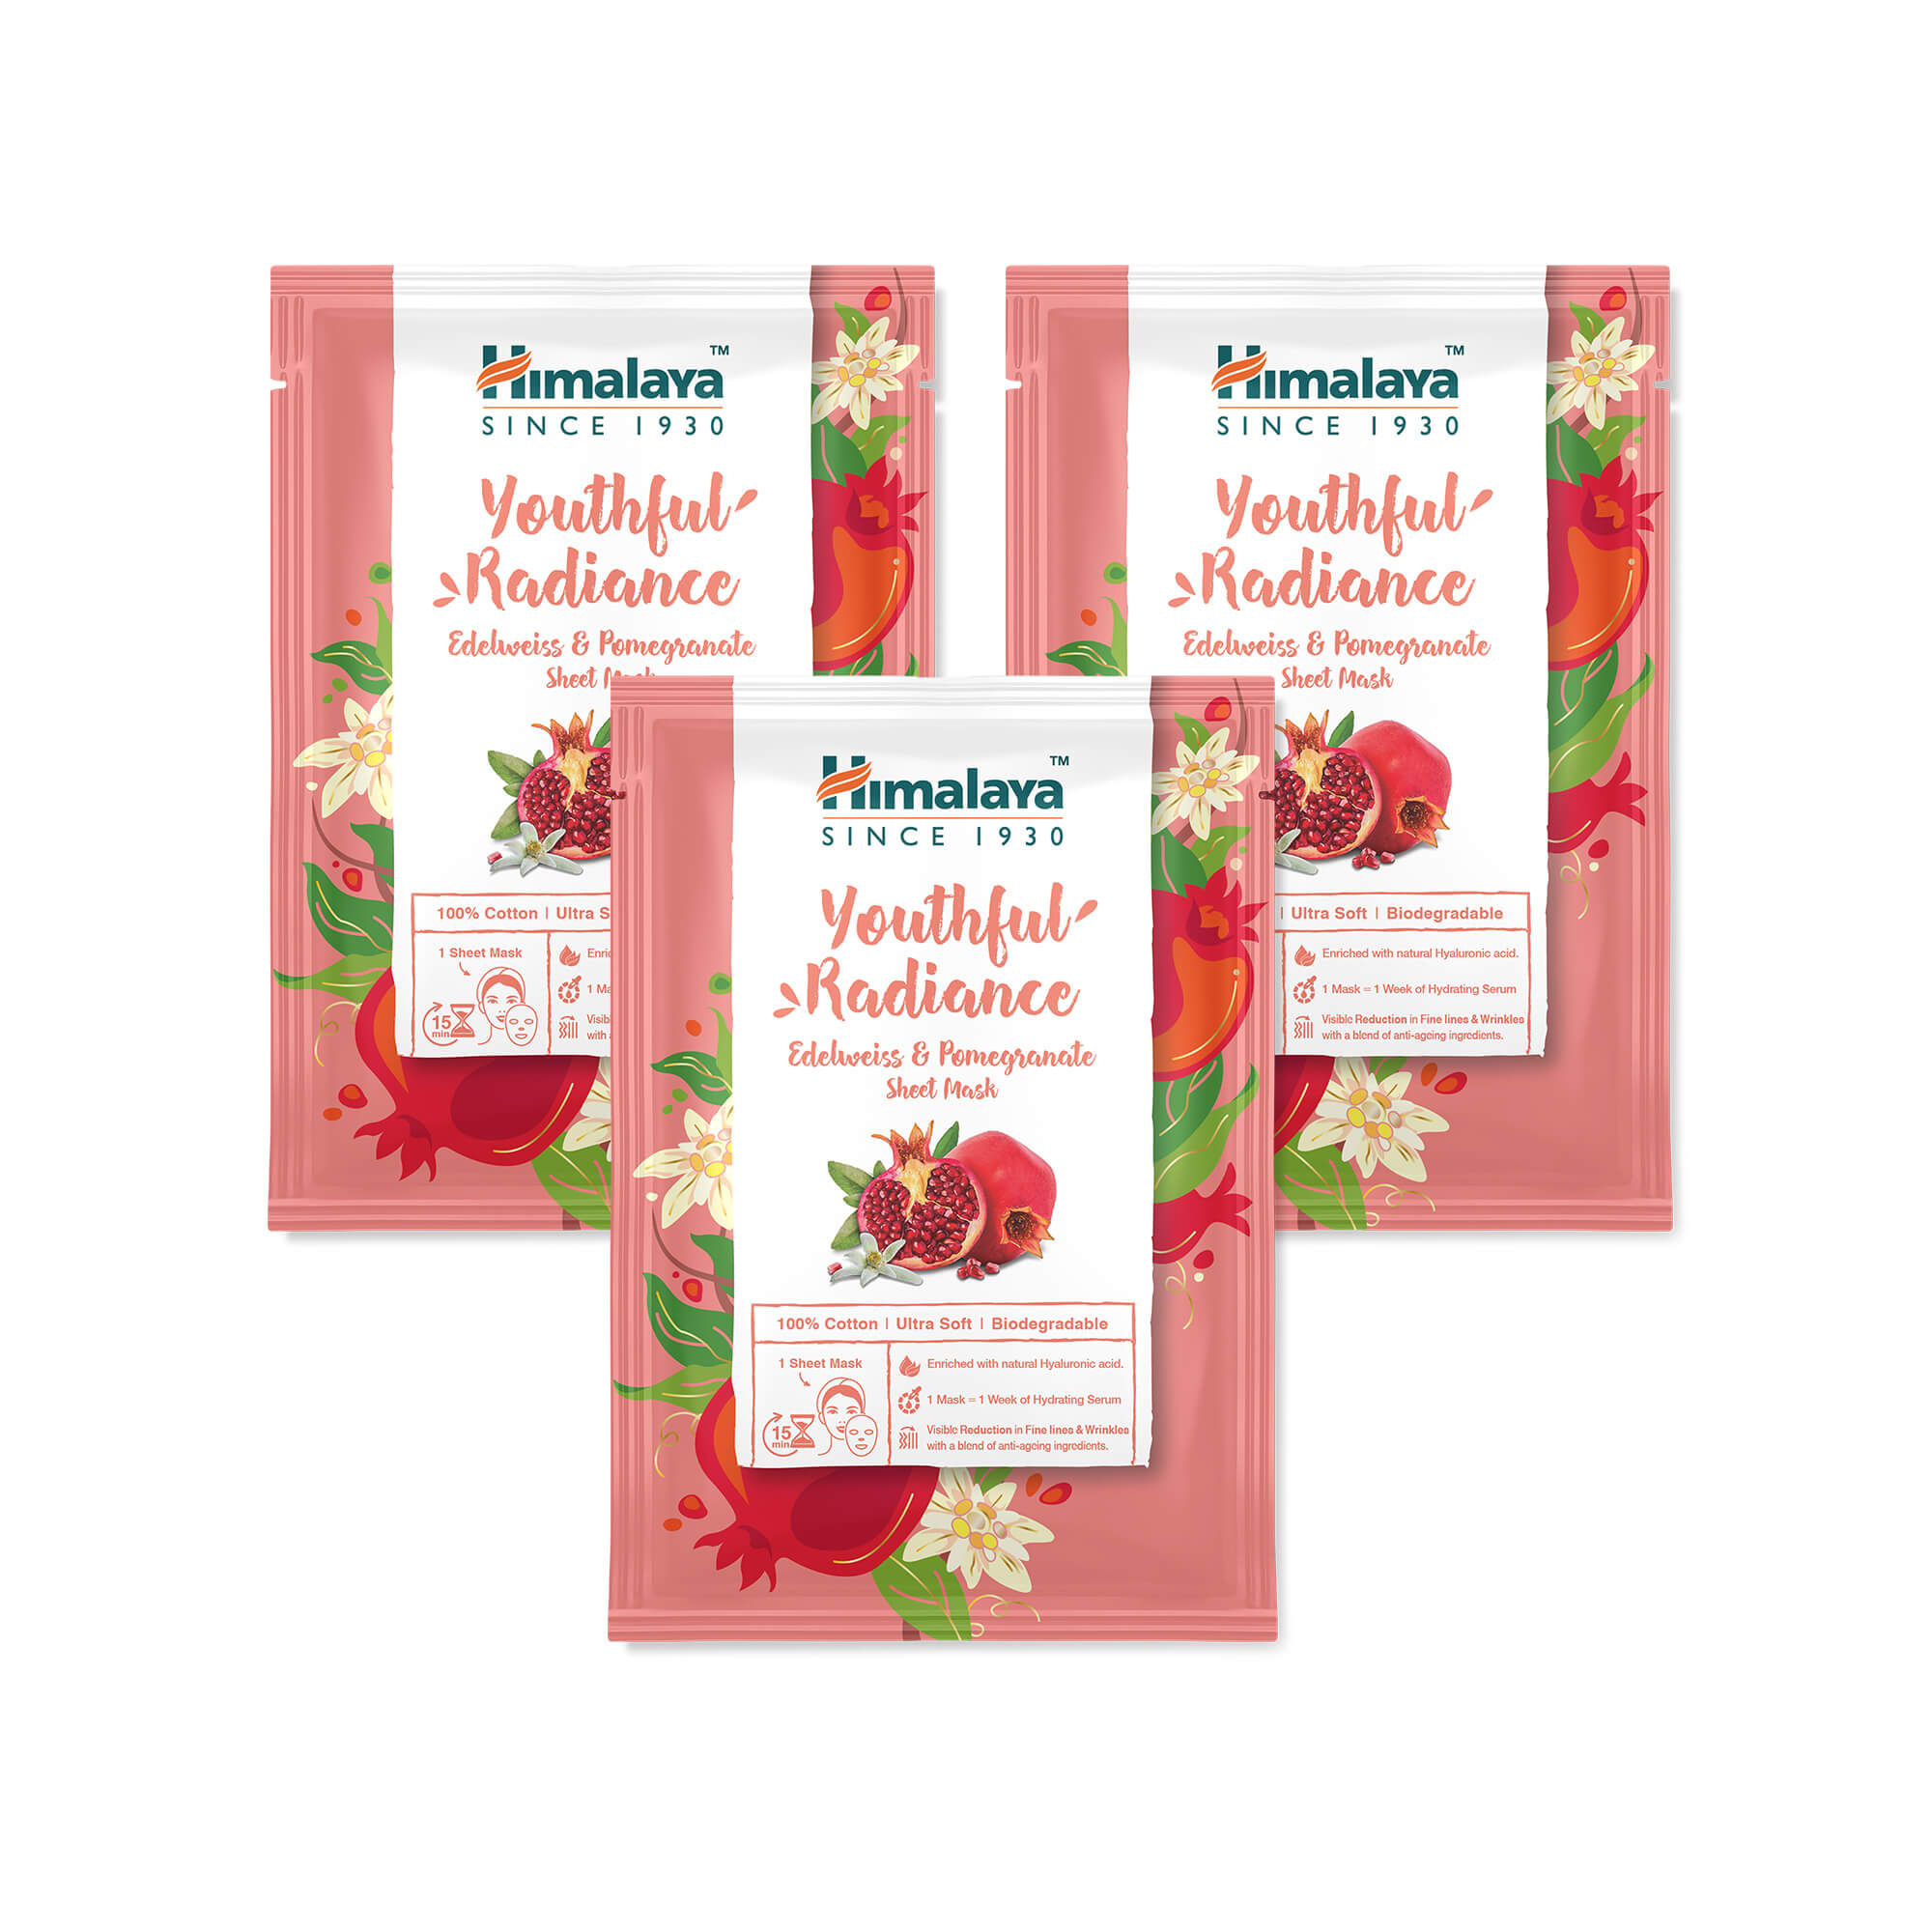 Himalaya Youthful Radiance Edelweiss & Pomegranate Sheet Mask - 30ml (Pack of 3)